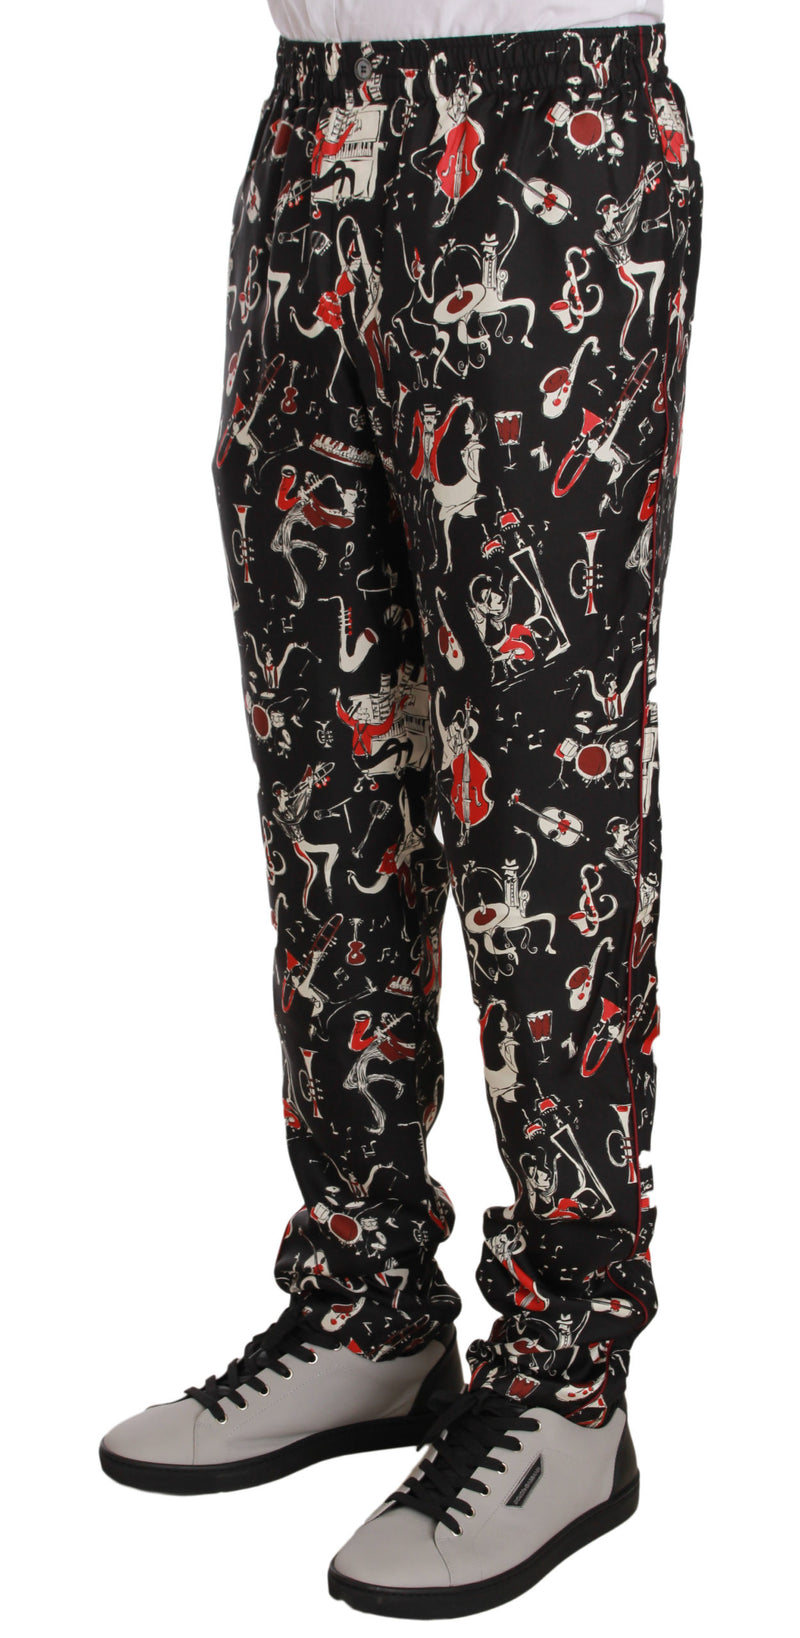 Red Musical Instrument Print Sleepwear Pants